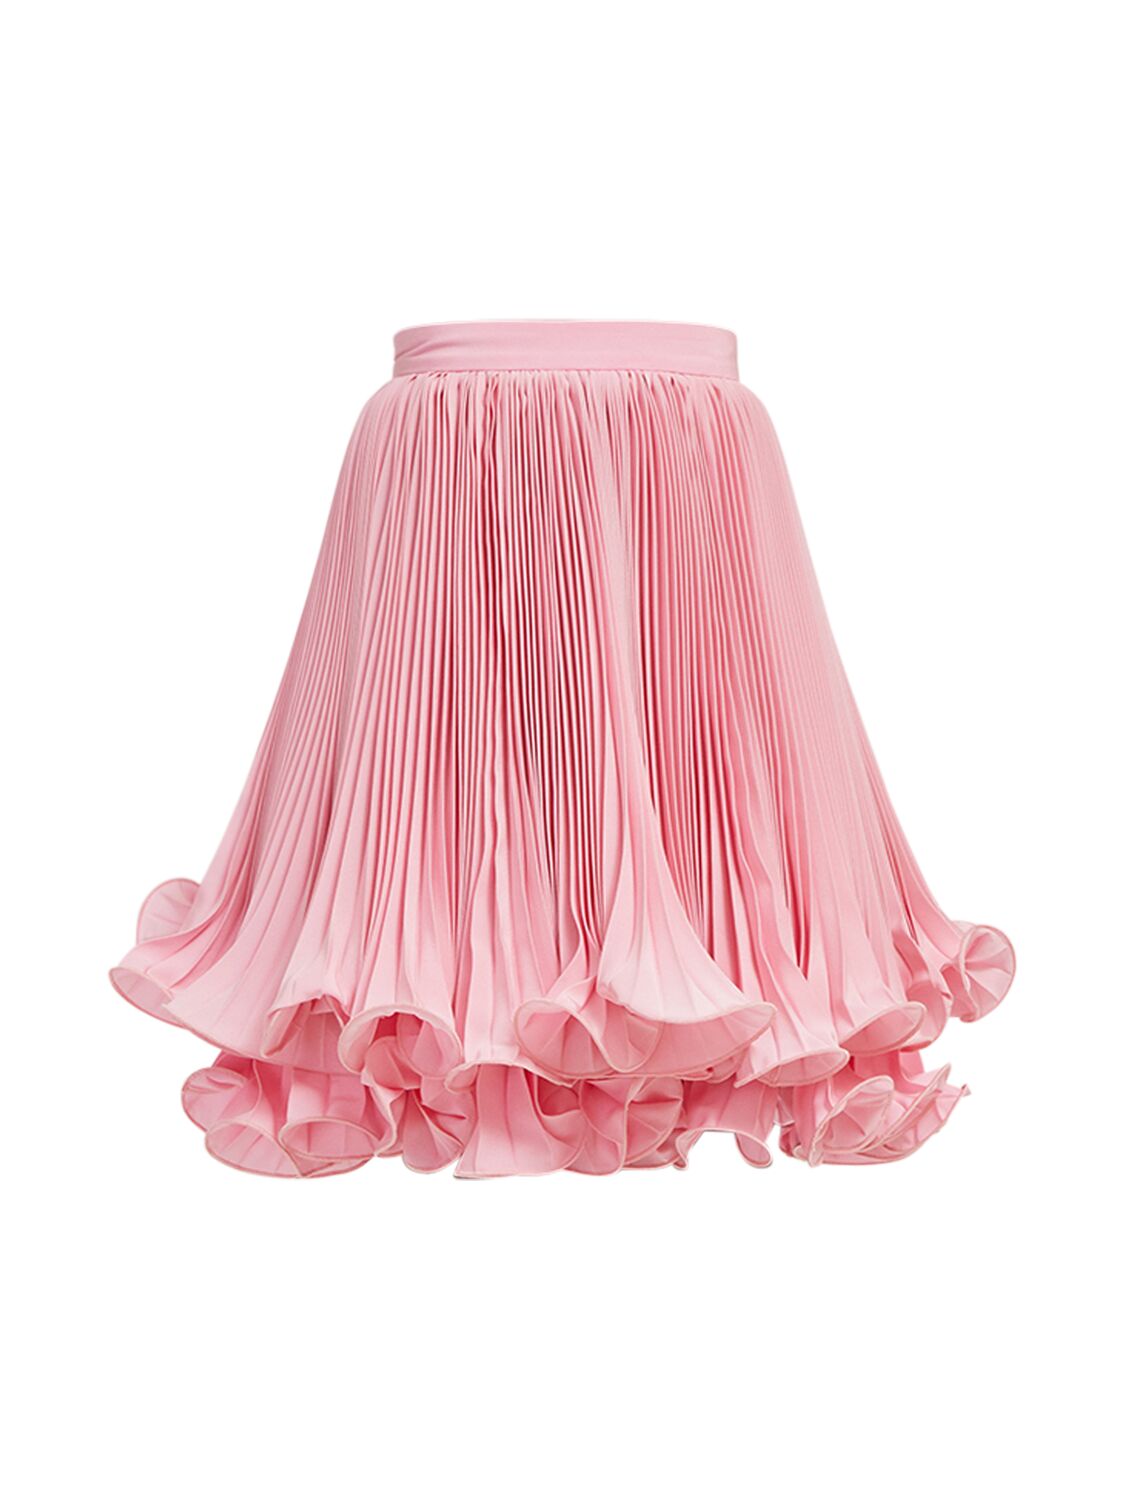 Image of Pleated Light Crepe Mini Skirt